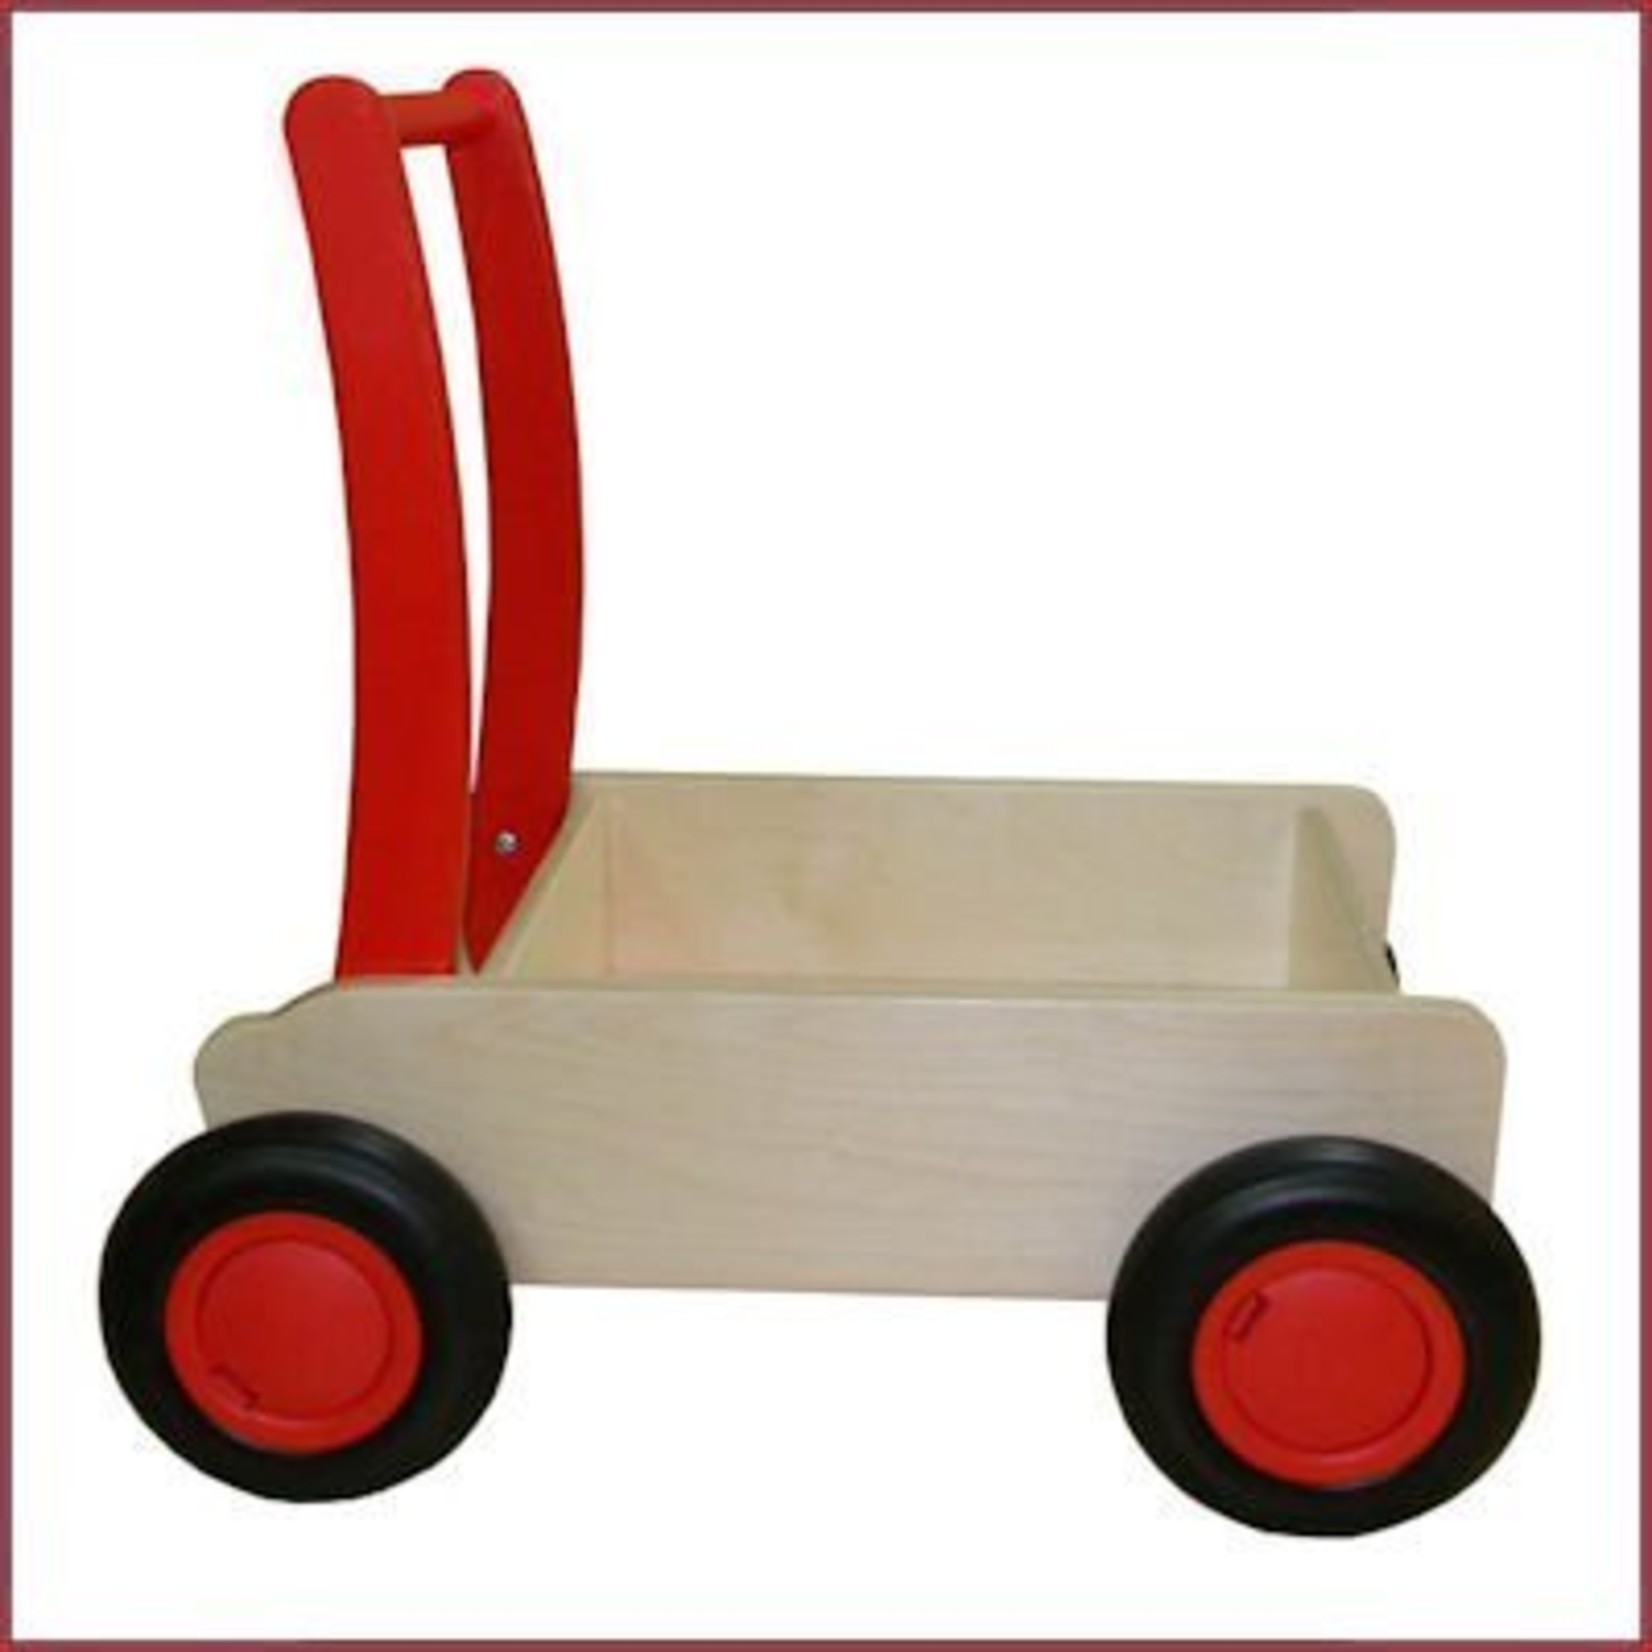 haalbaar Tol gastheer Stoere Houten Loopwagen/duwkar - Rood - Baboffel - De kinder- en  speelgoedwinkel voor bijzonder speelgoed